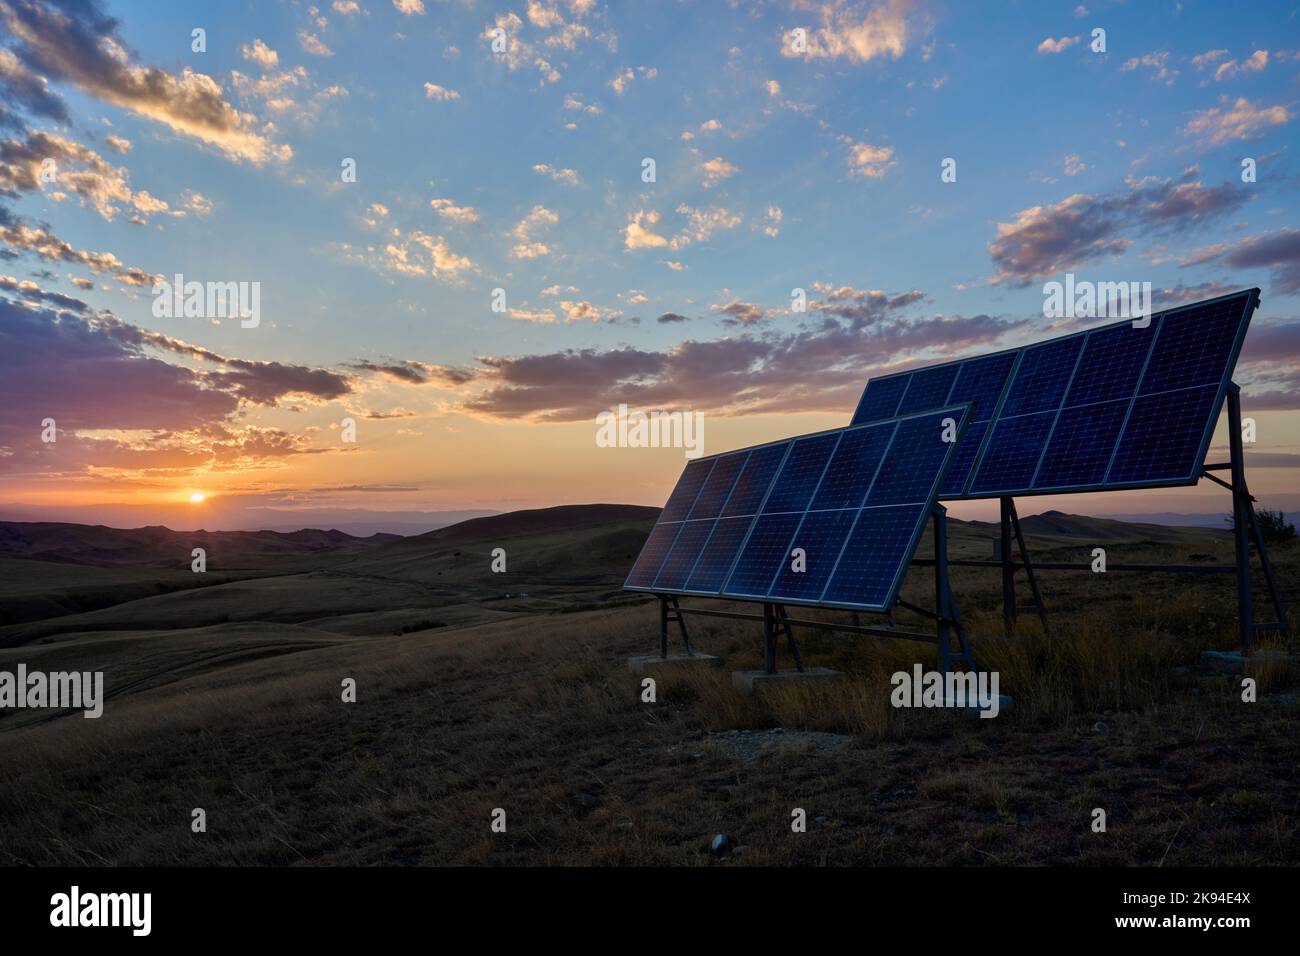 Sonnenuntergang, 2 Solarmodule neben einem Funkmast, Halbwüste, Steppenlandschaft Garedscha, Kachetien, Raion Sagaredscho, Südosten von Georgien Stock Photo